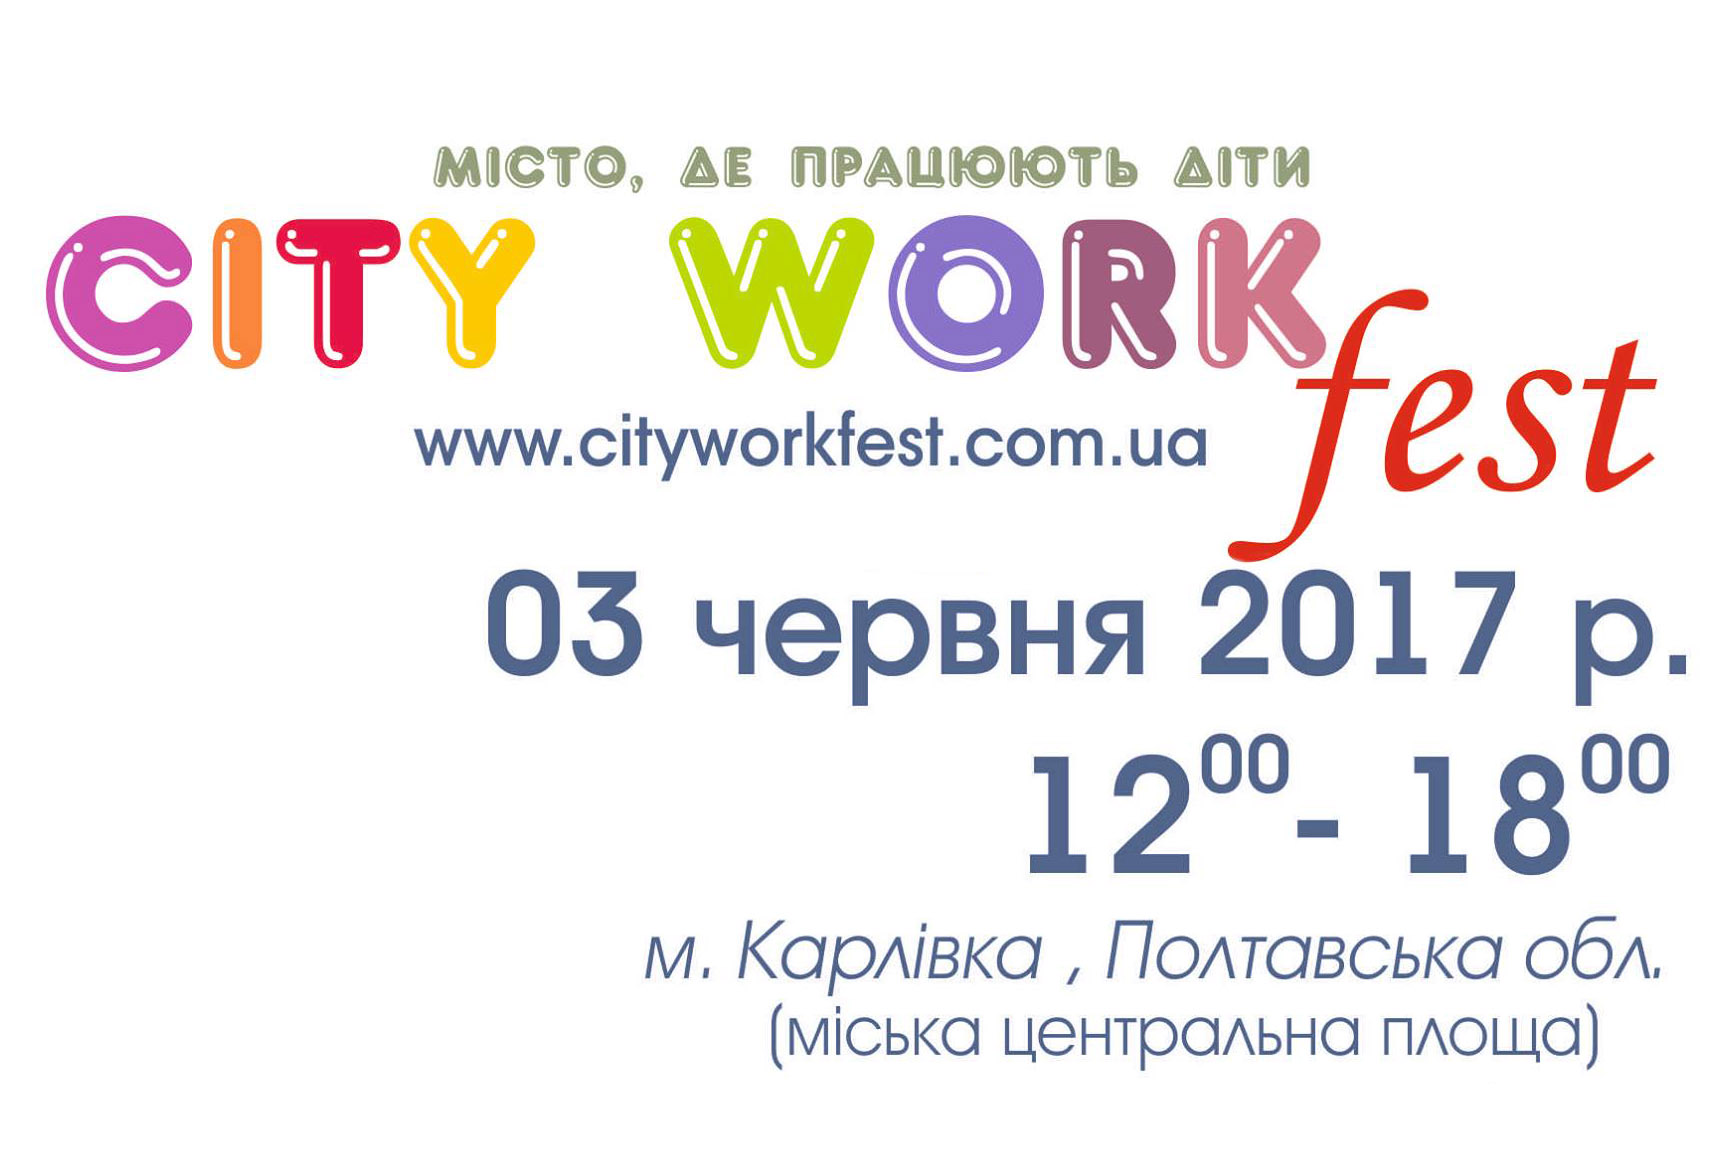 Фестиваль City work fest в м. Карлівка